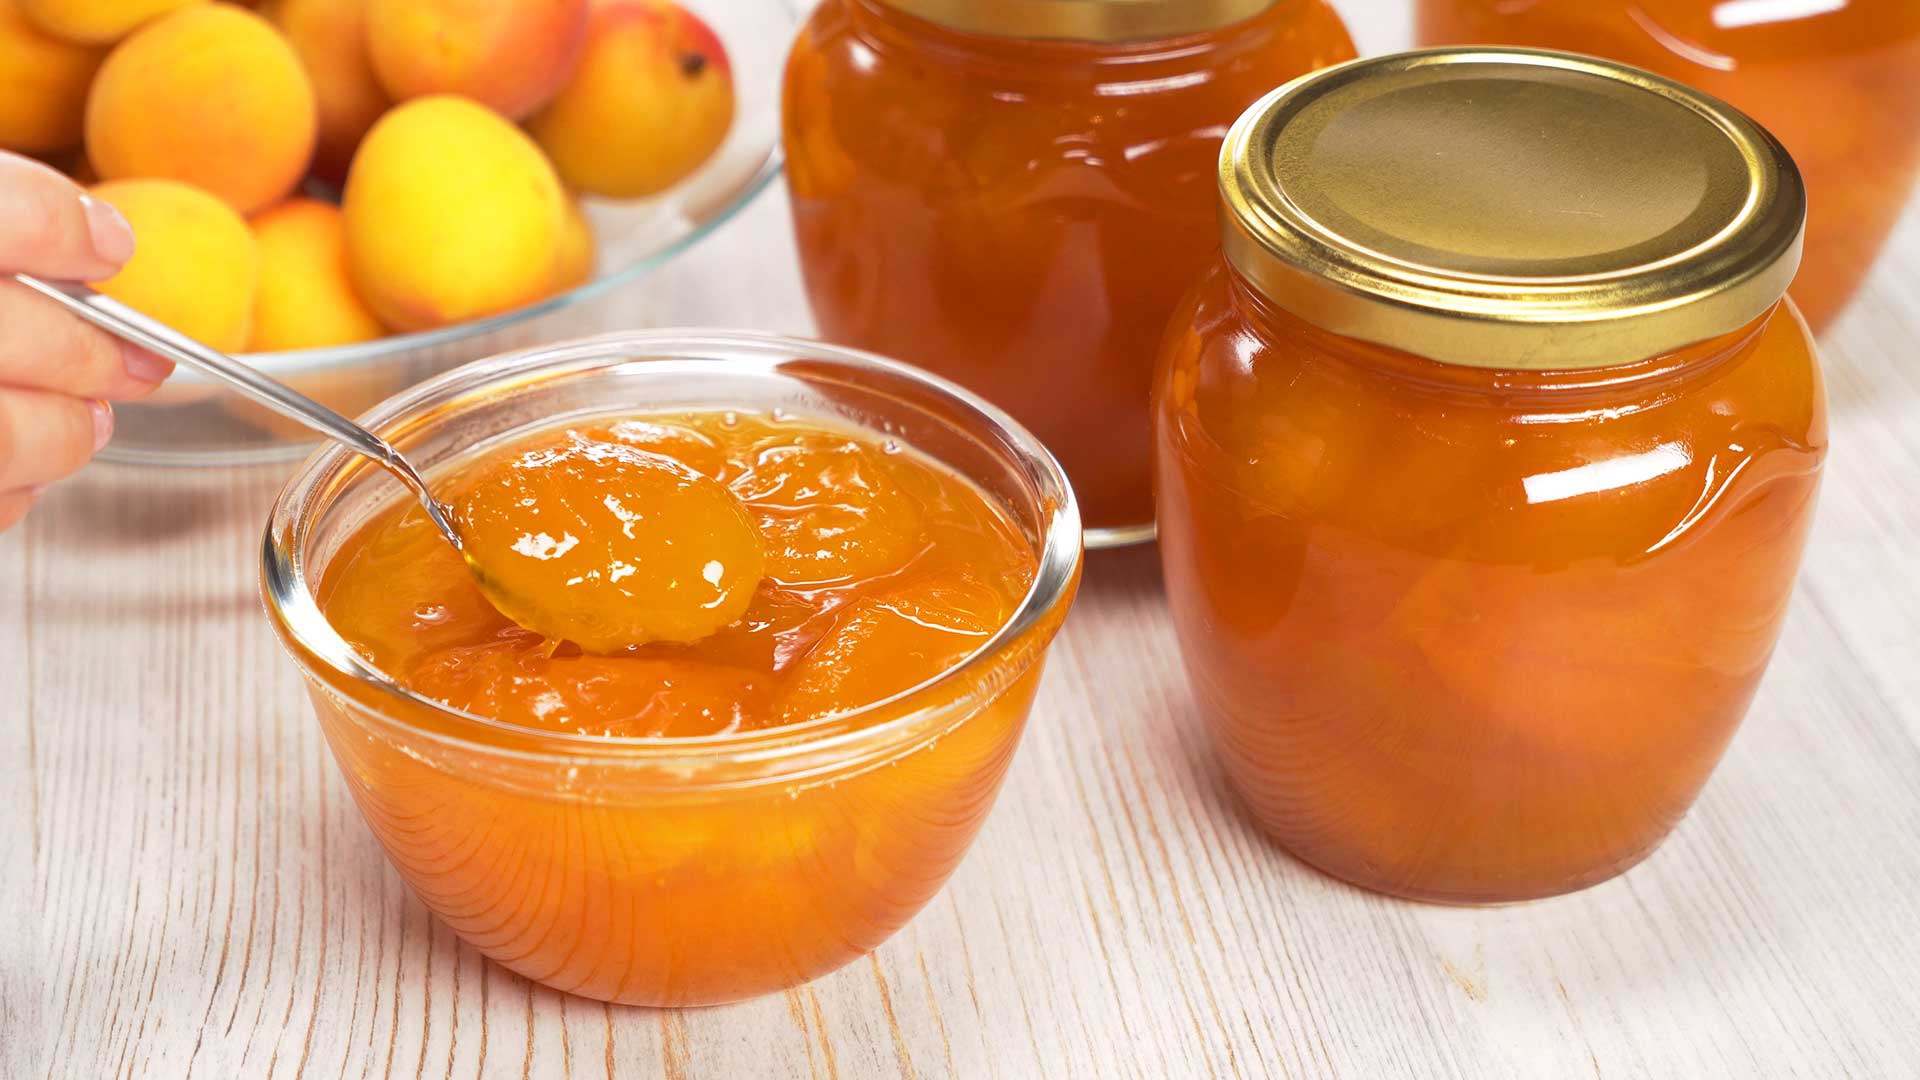 3 лучших рецепта приготовления варенья из абрикосов и персиков на зиму